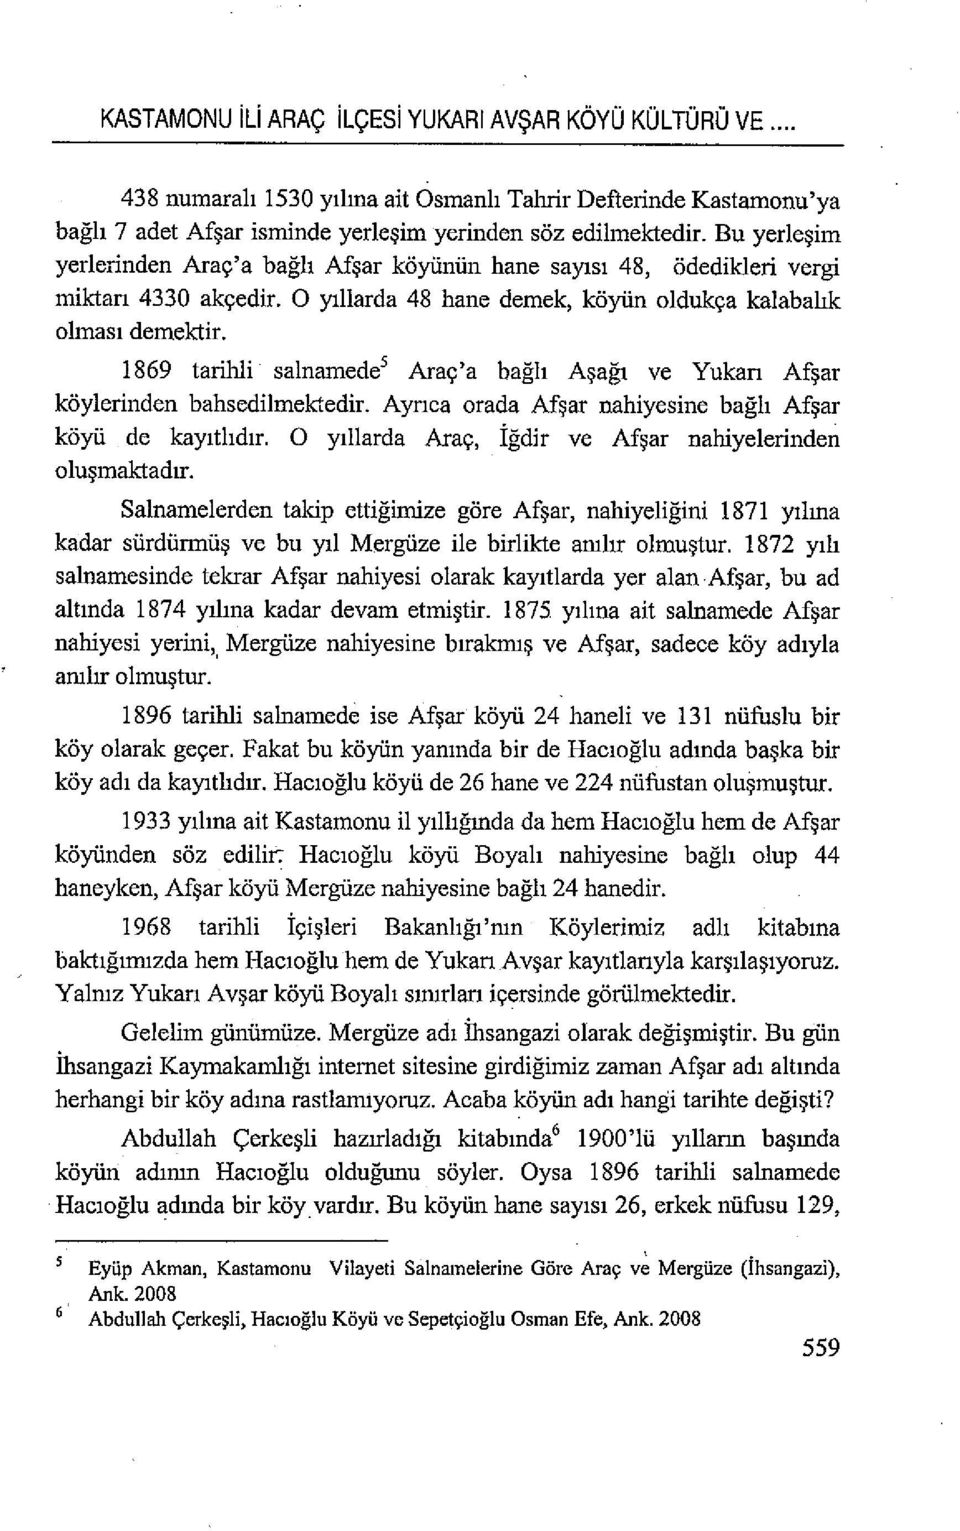 1869 tarihli salnamede 5 Araç'a bağlı Aşağı ve Yukan Afşar köylerinden bahsedilmektedir. Aynca orada Afşar nahiyesine bağlı Afşar köyü de kayıtlıdır.